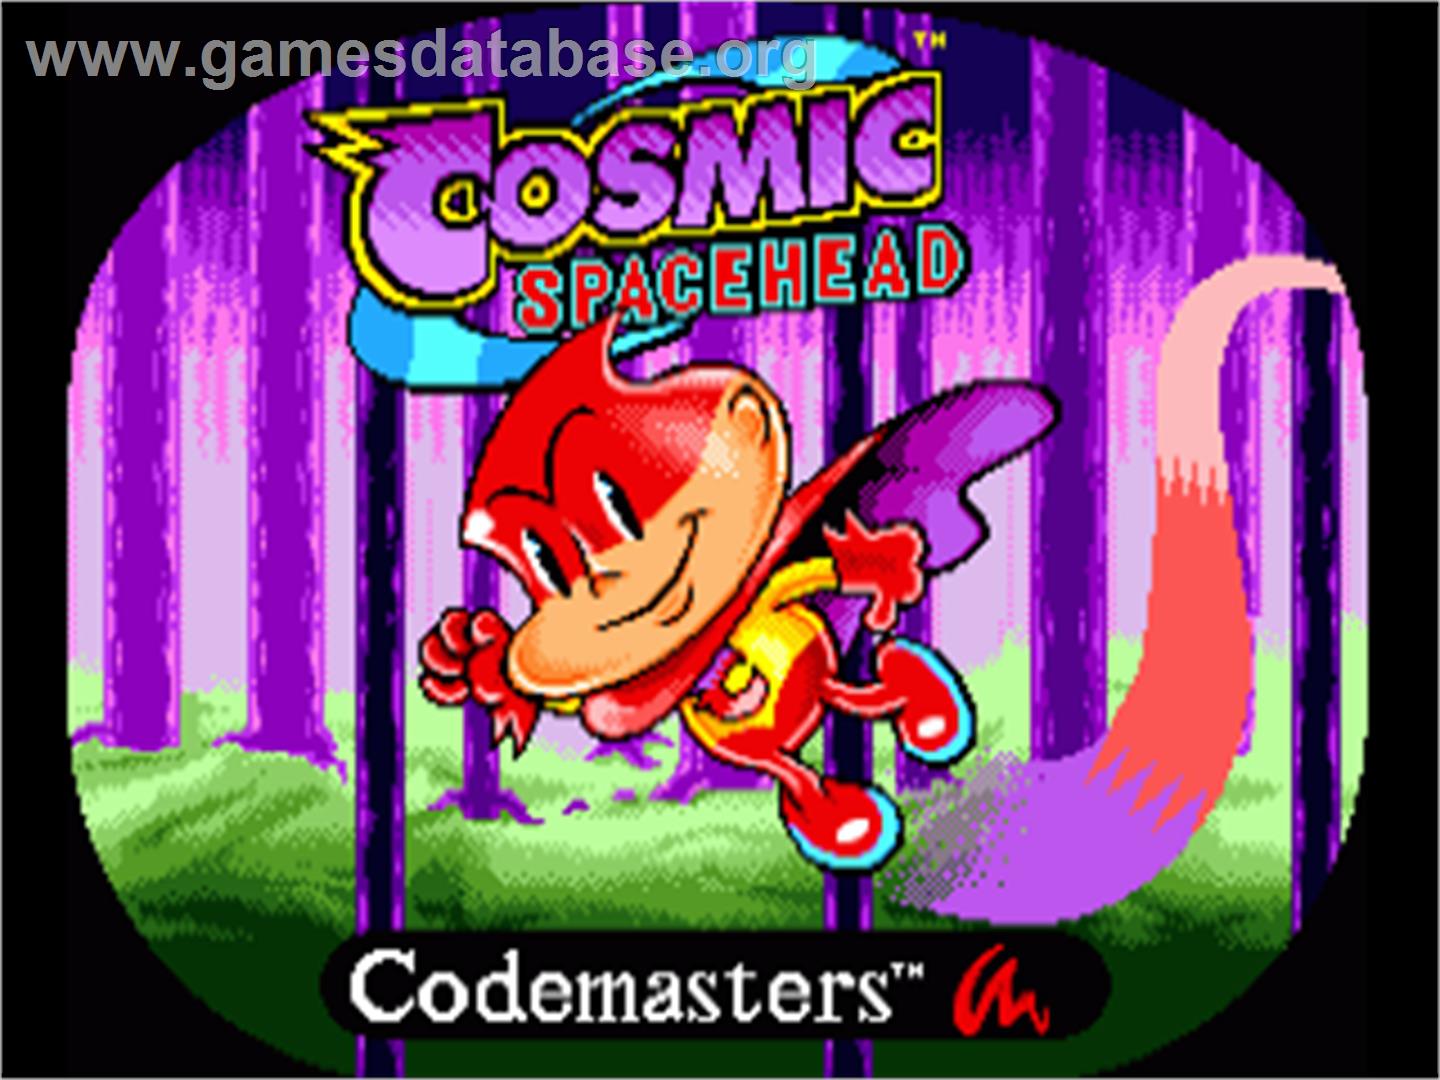 Cosmic Spacehead - Commodore Amiga - Artwork - Title Screen